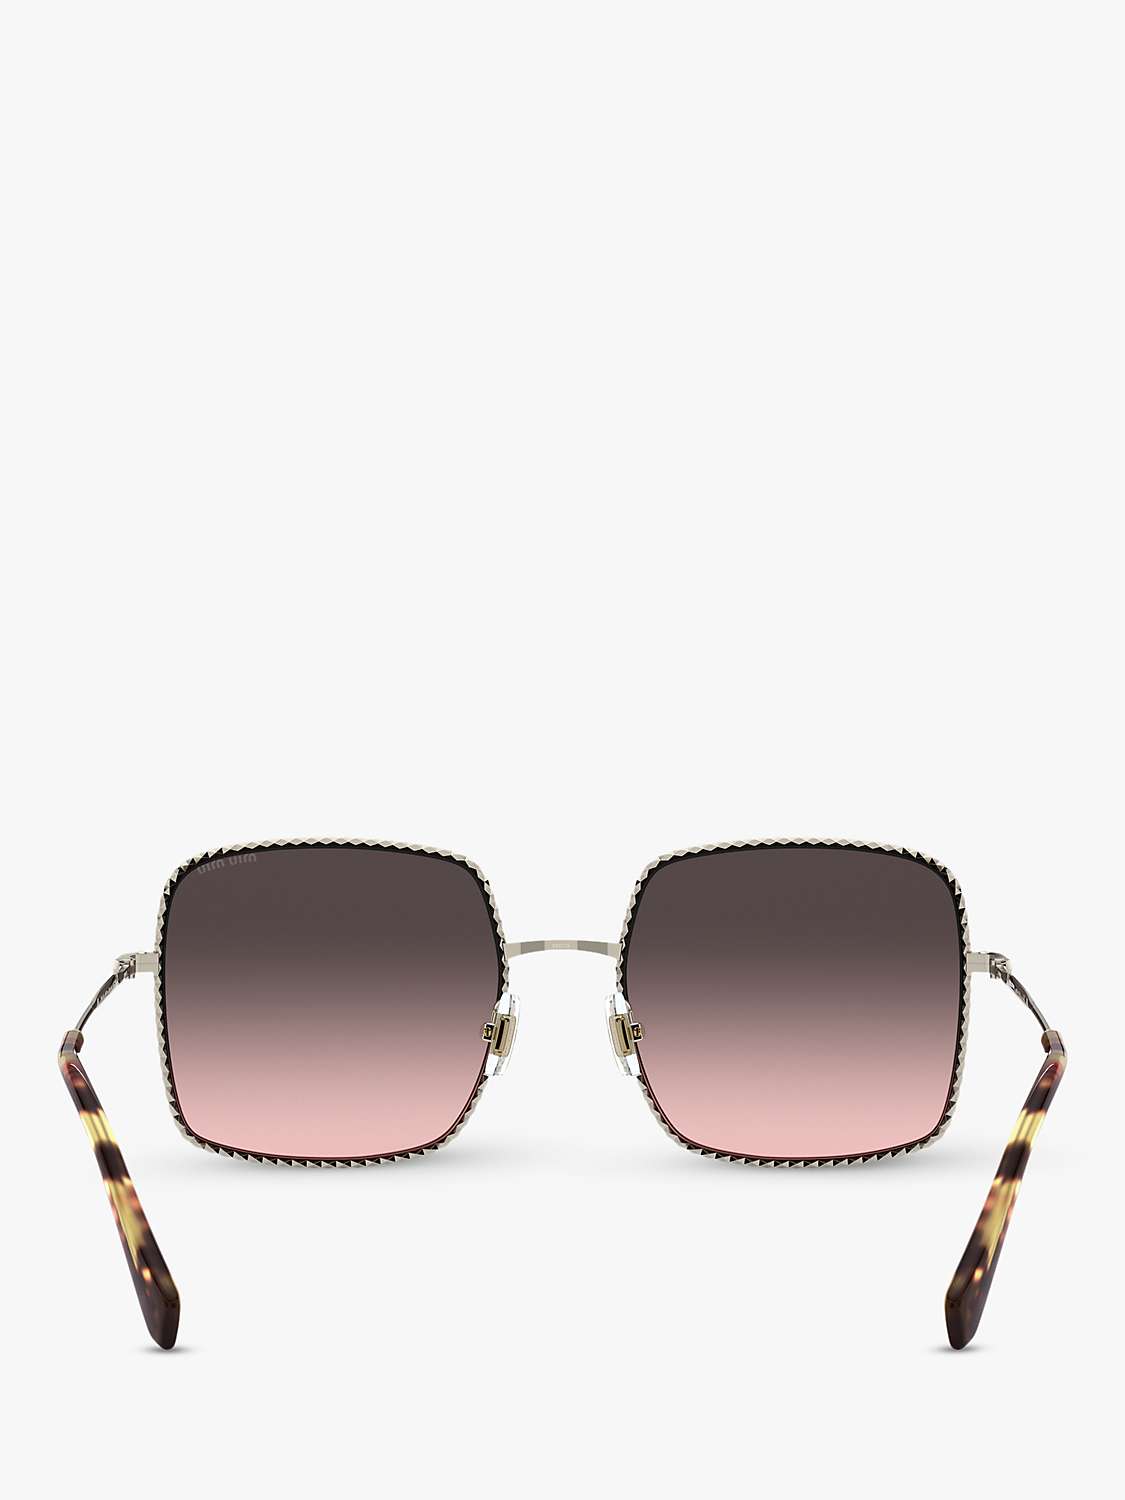 Buy Miu Miu MU 61VS Women's Rectangular Sunglasses, Pale Gold/Pink Grey Gradient Online at johnlewis.com